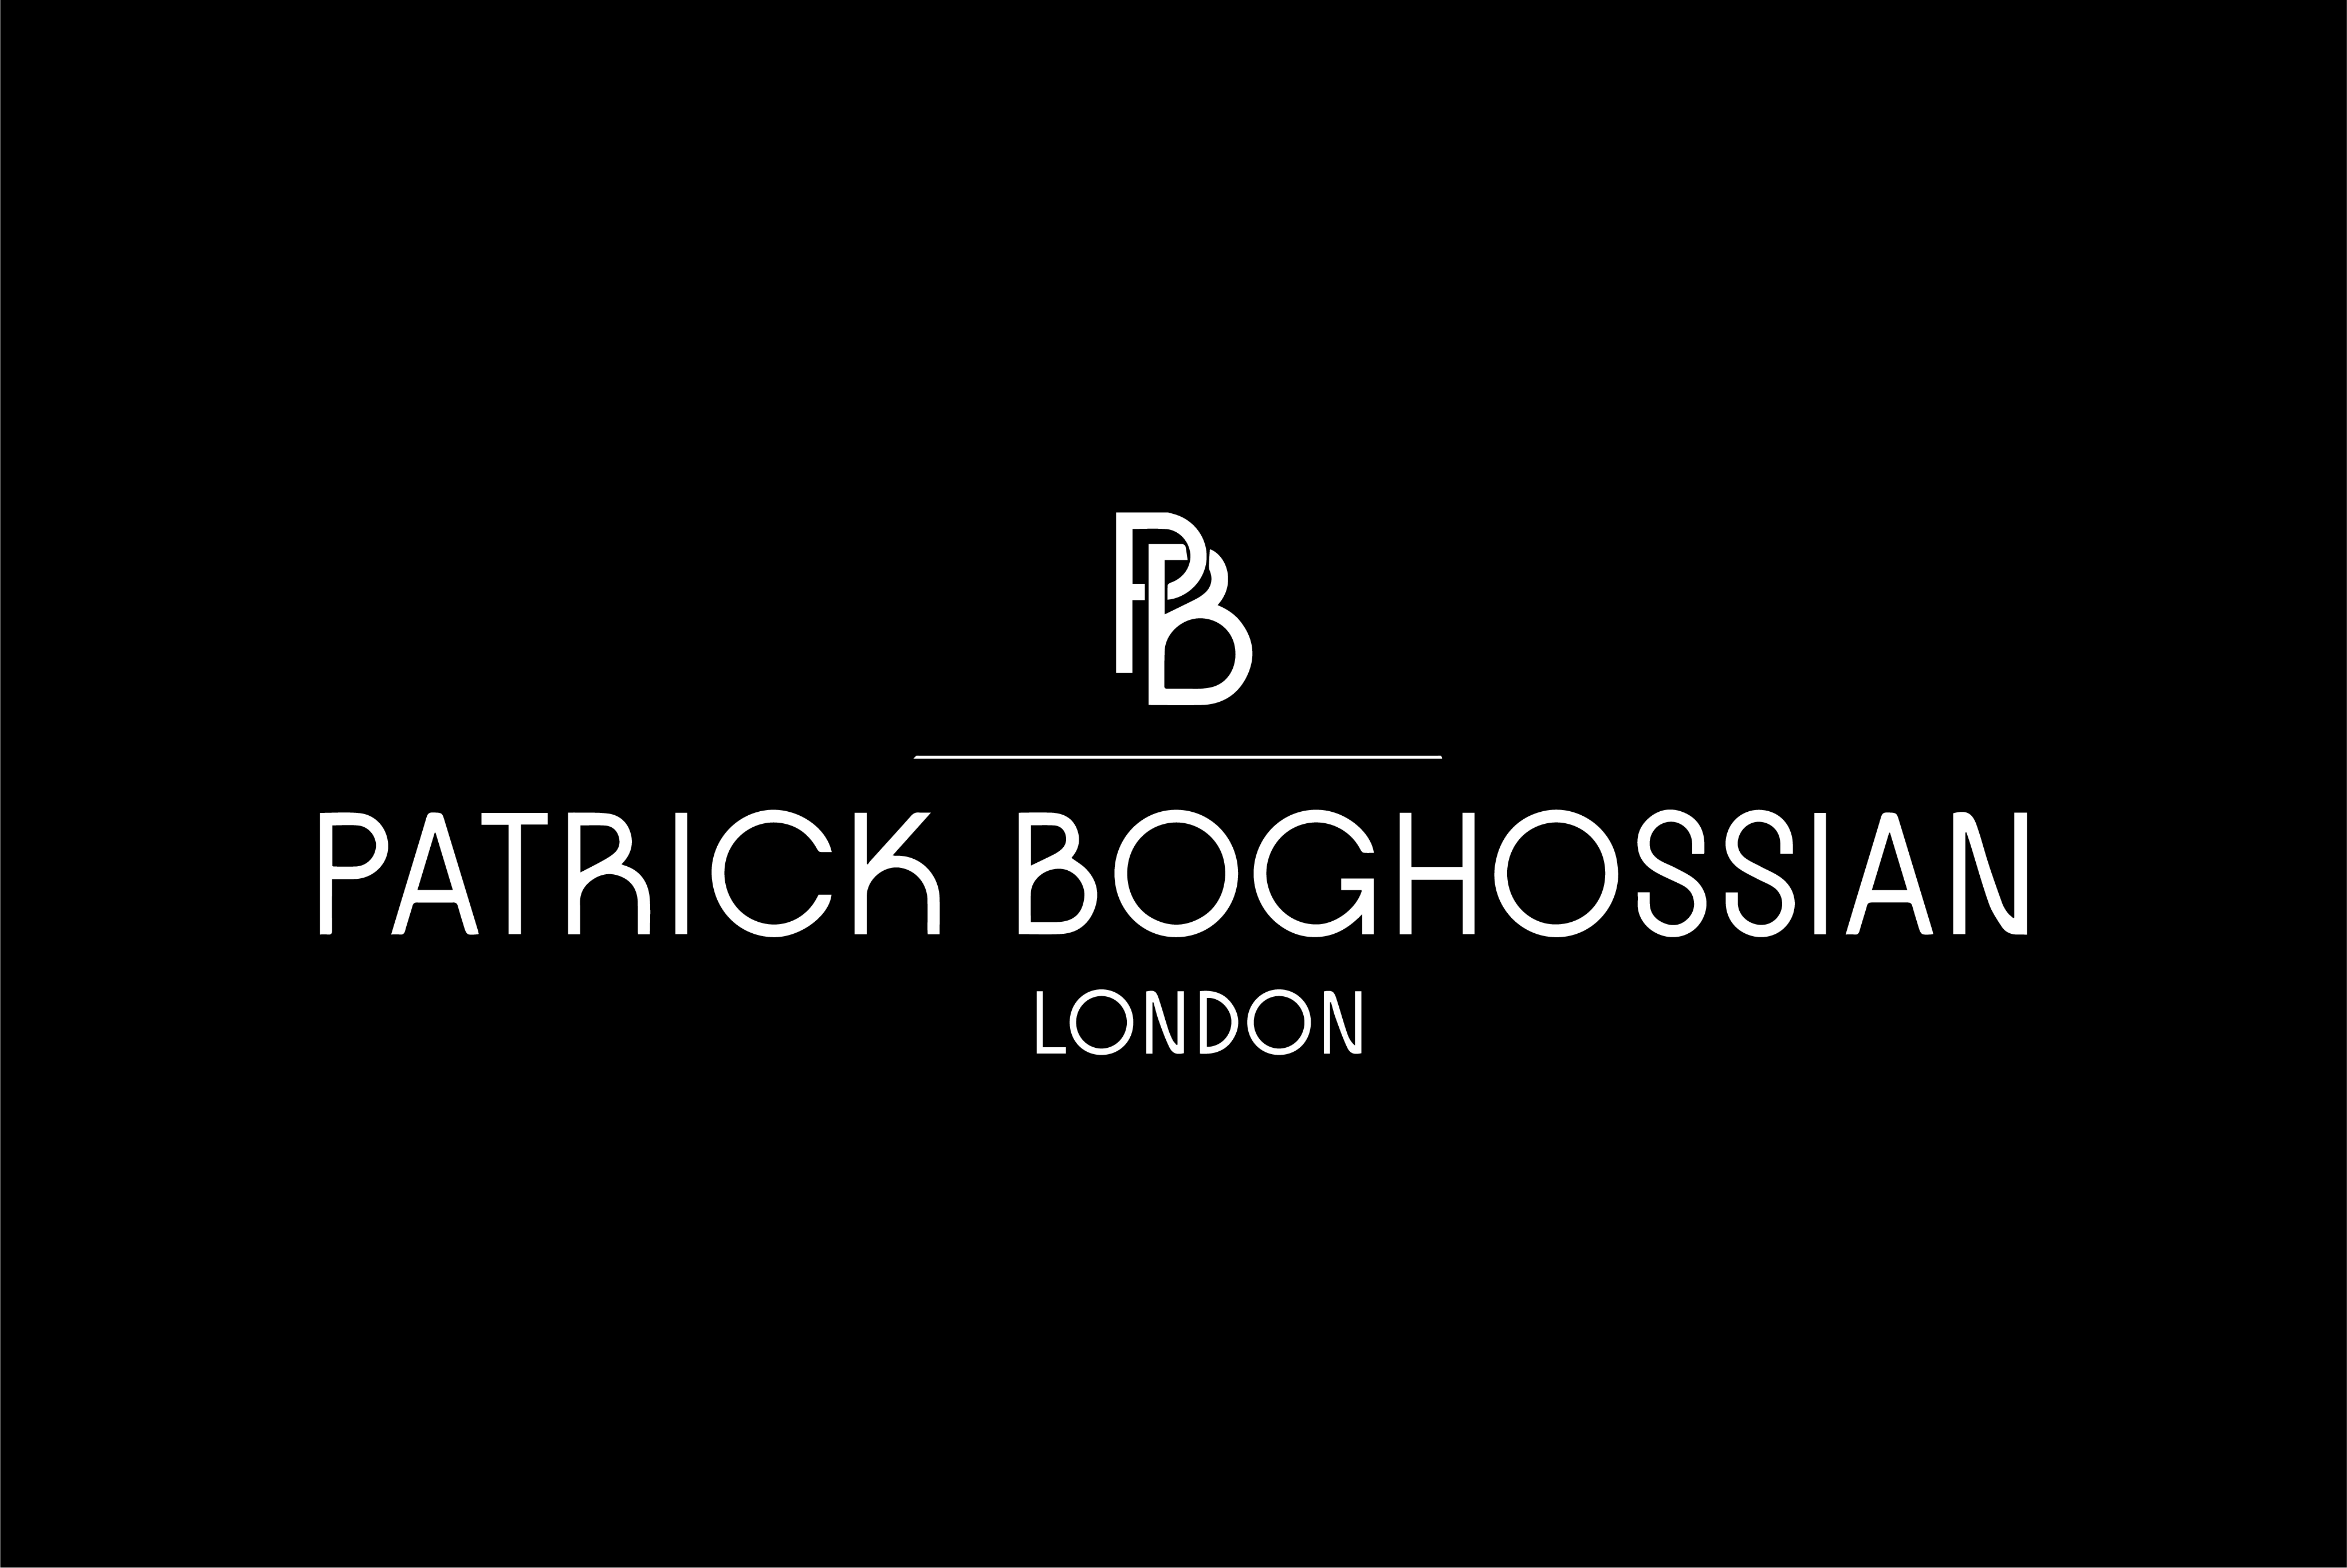 PR Patrick Boghossian